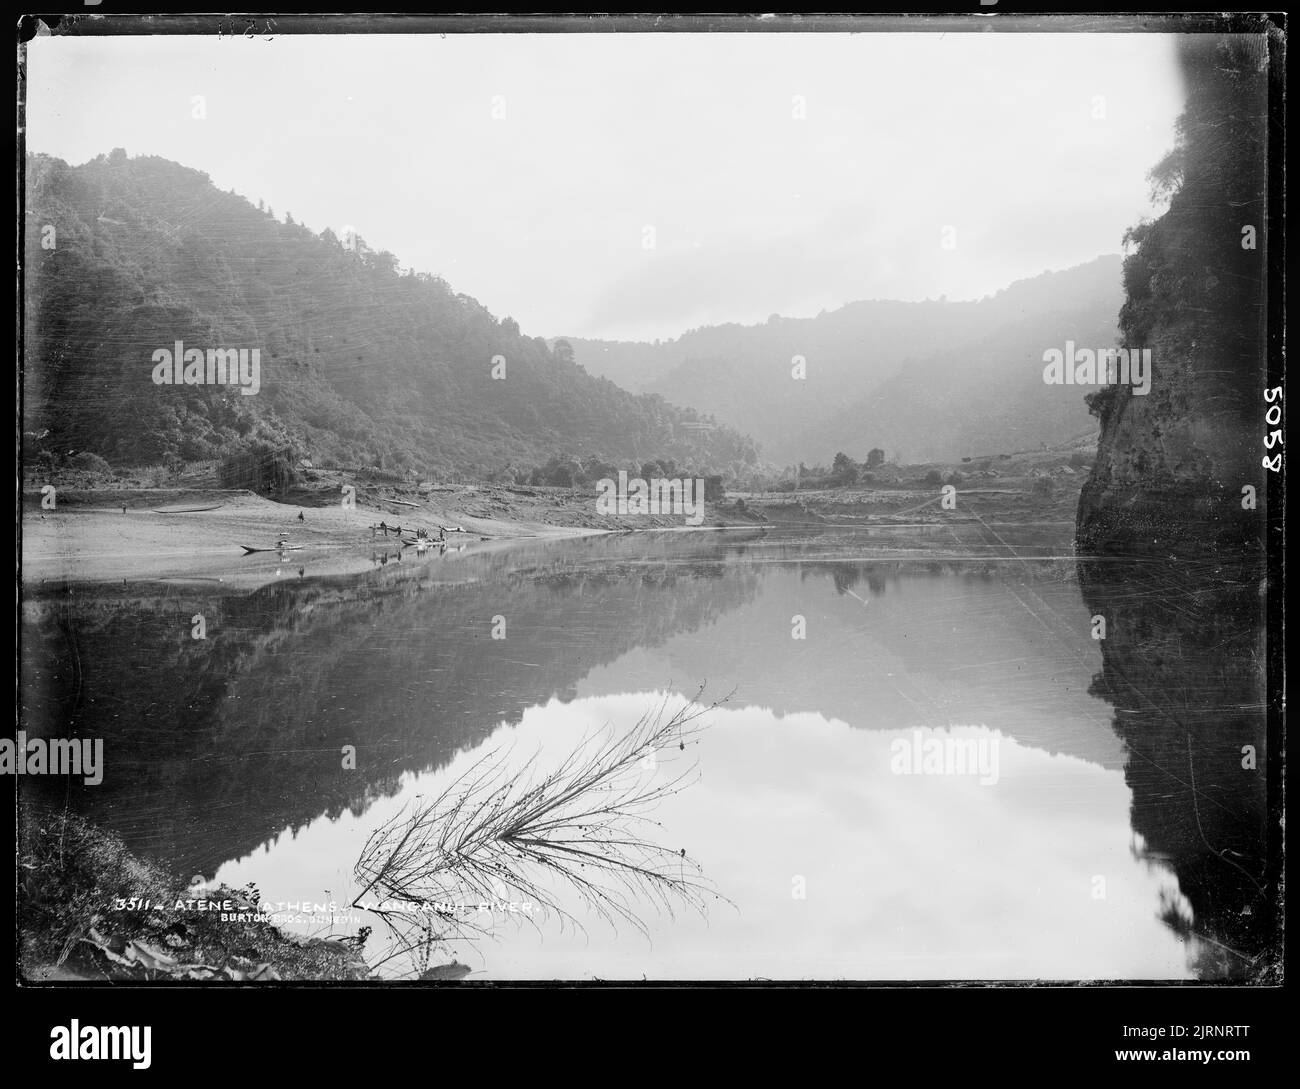 Atene (Athen), Wanganui River, Neuseeland, von Burton Brothers. Stockfoto